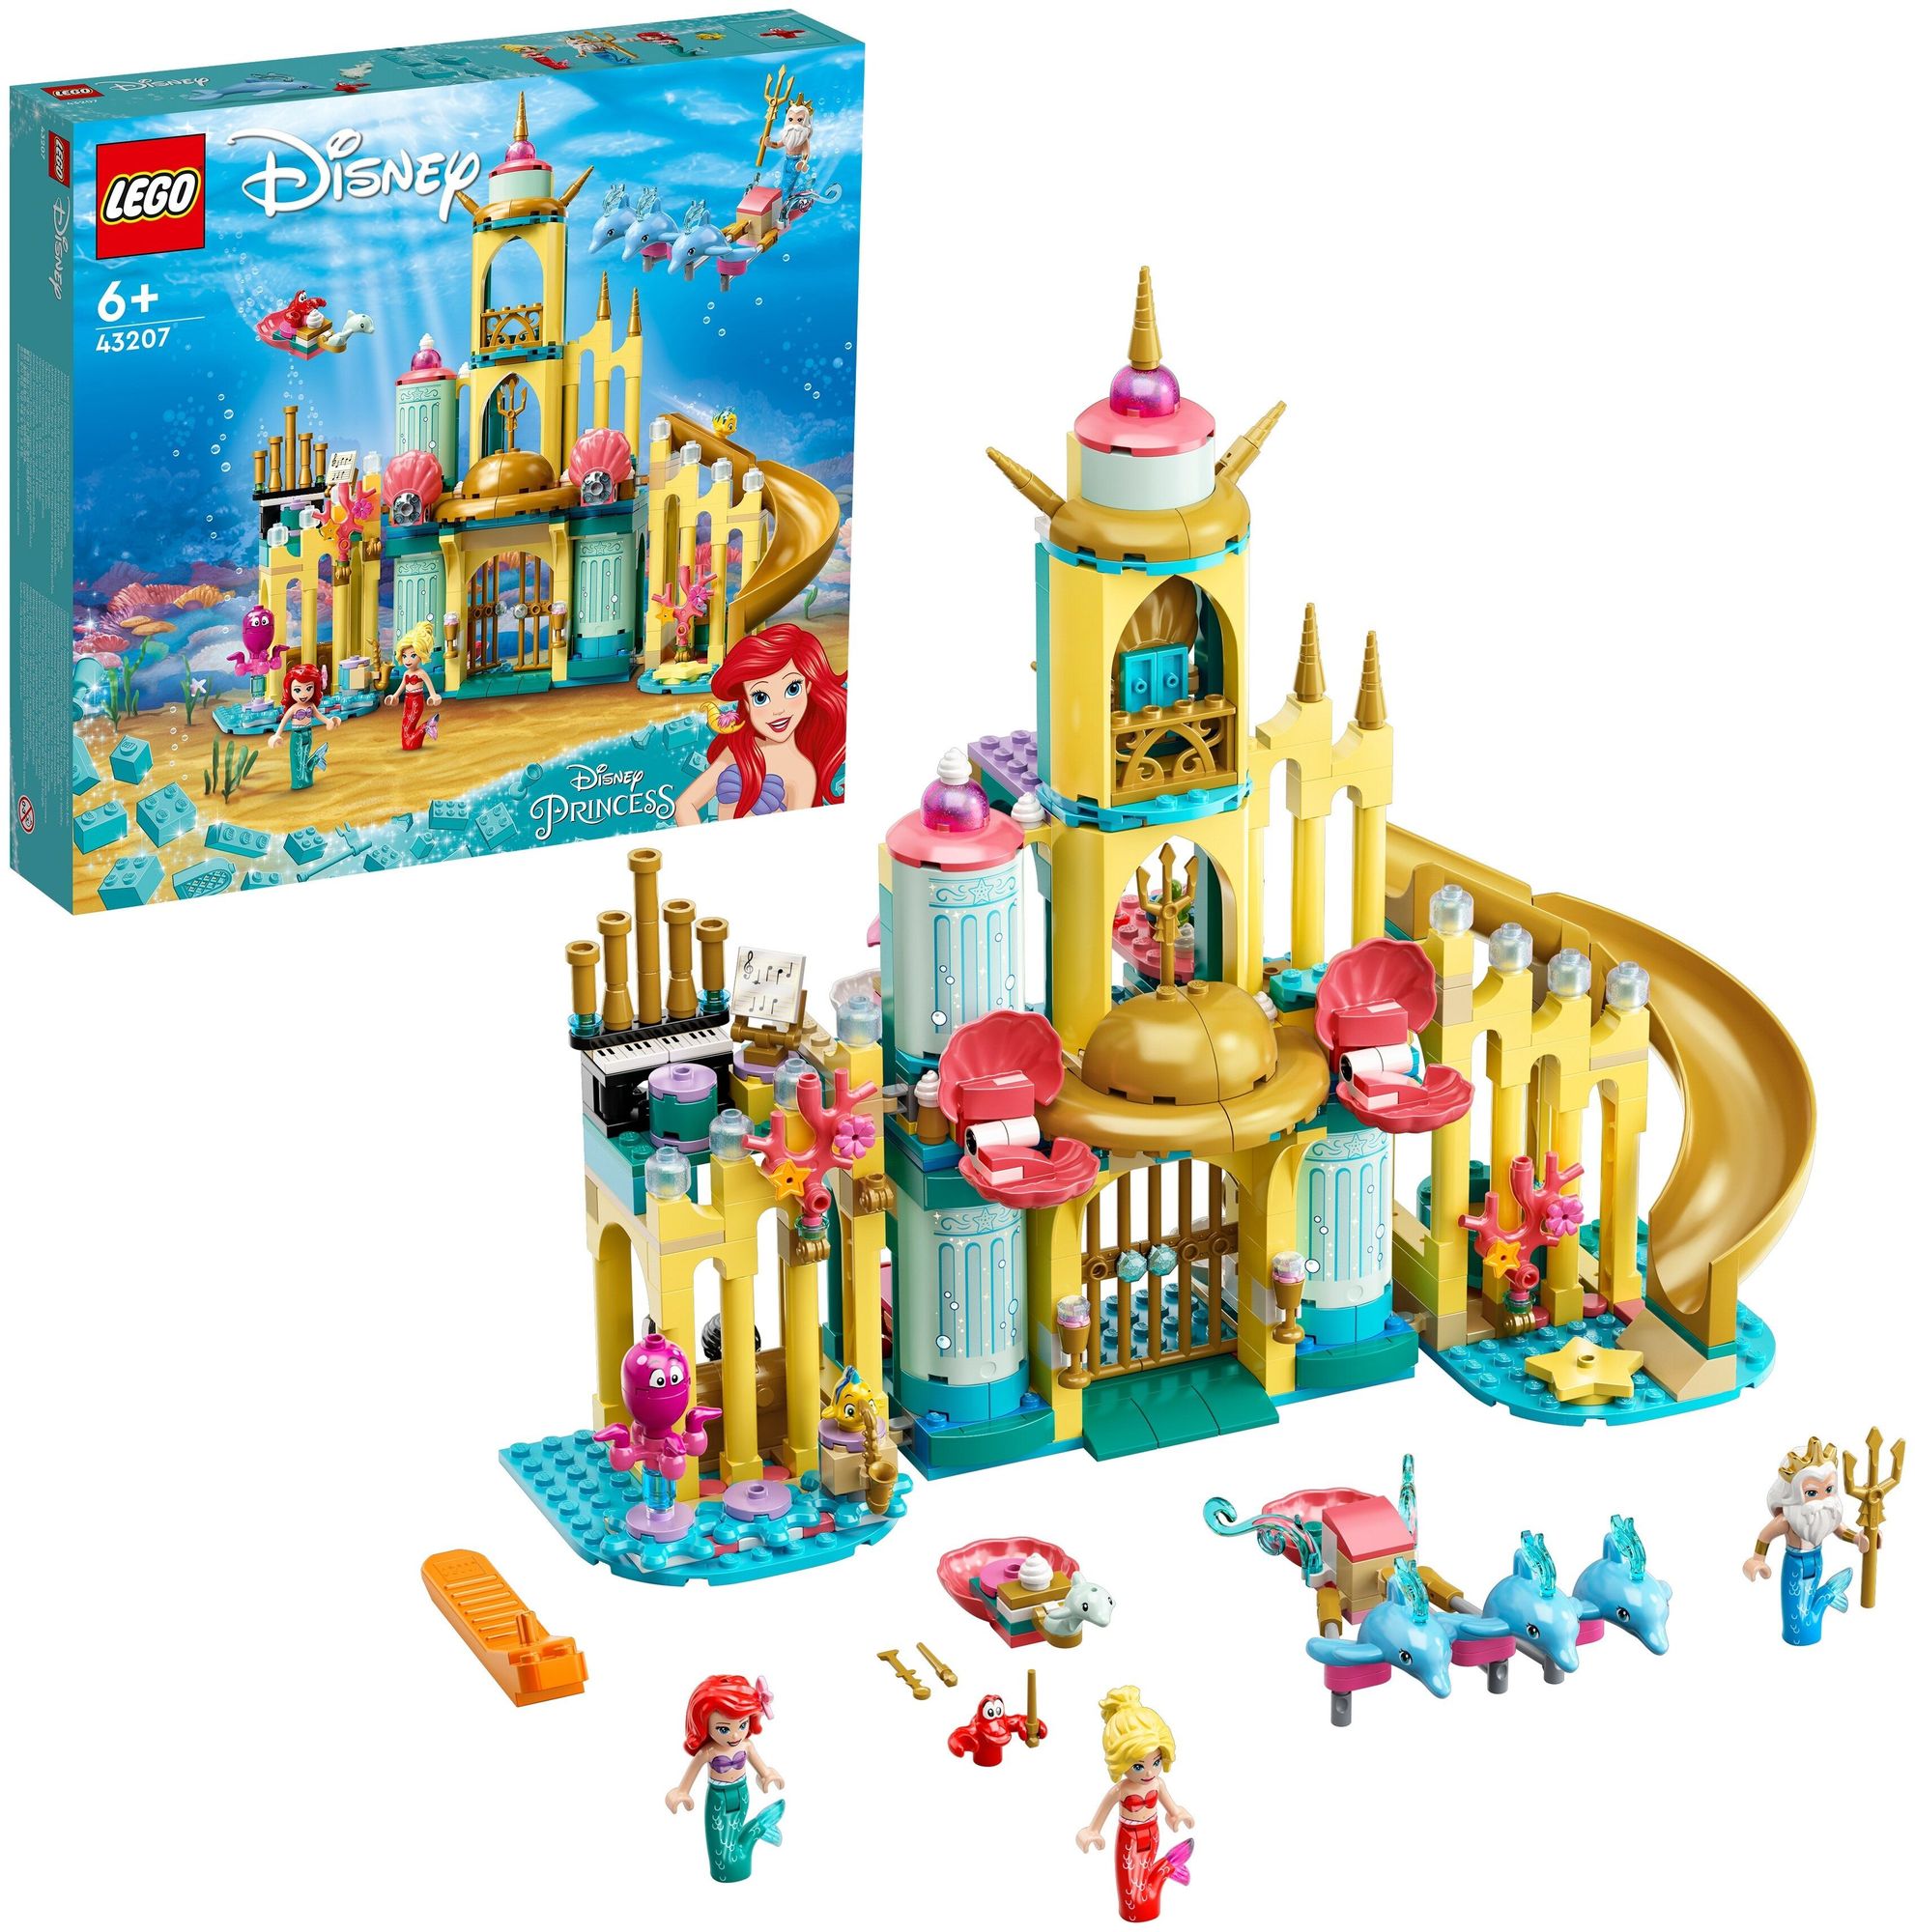 Конструктор LEGO Disney Princess Подводный дворец Ариэль 43207 конструктор lego disney princess 43186 саламандра бруни